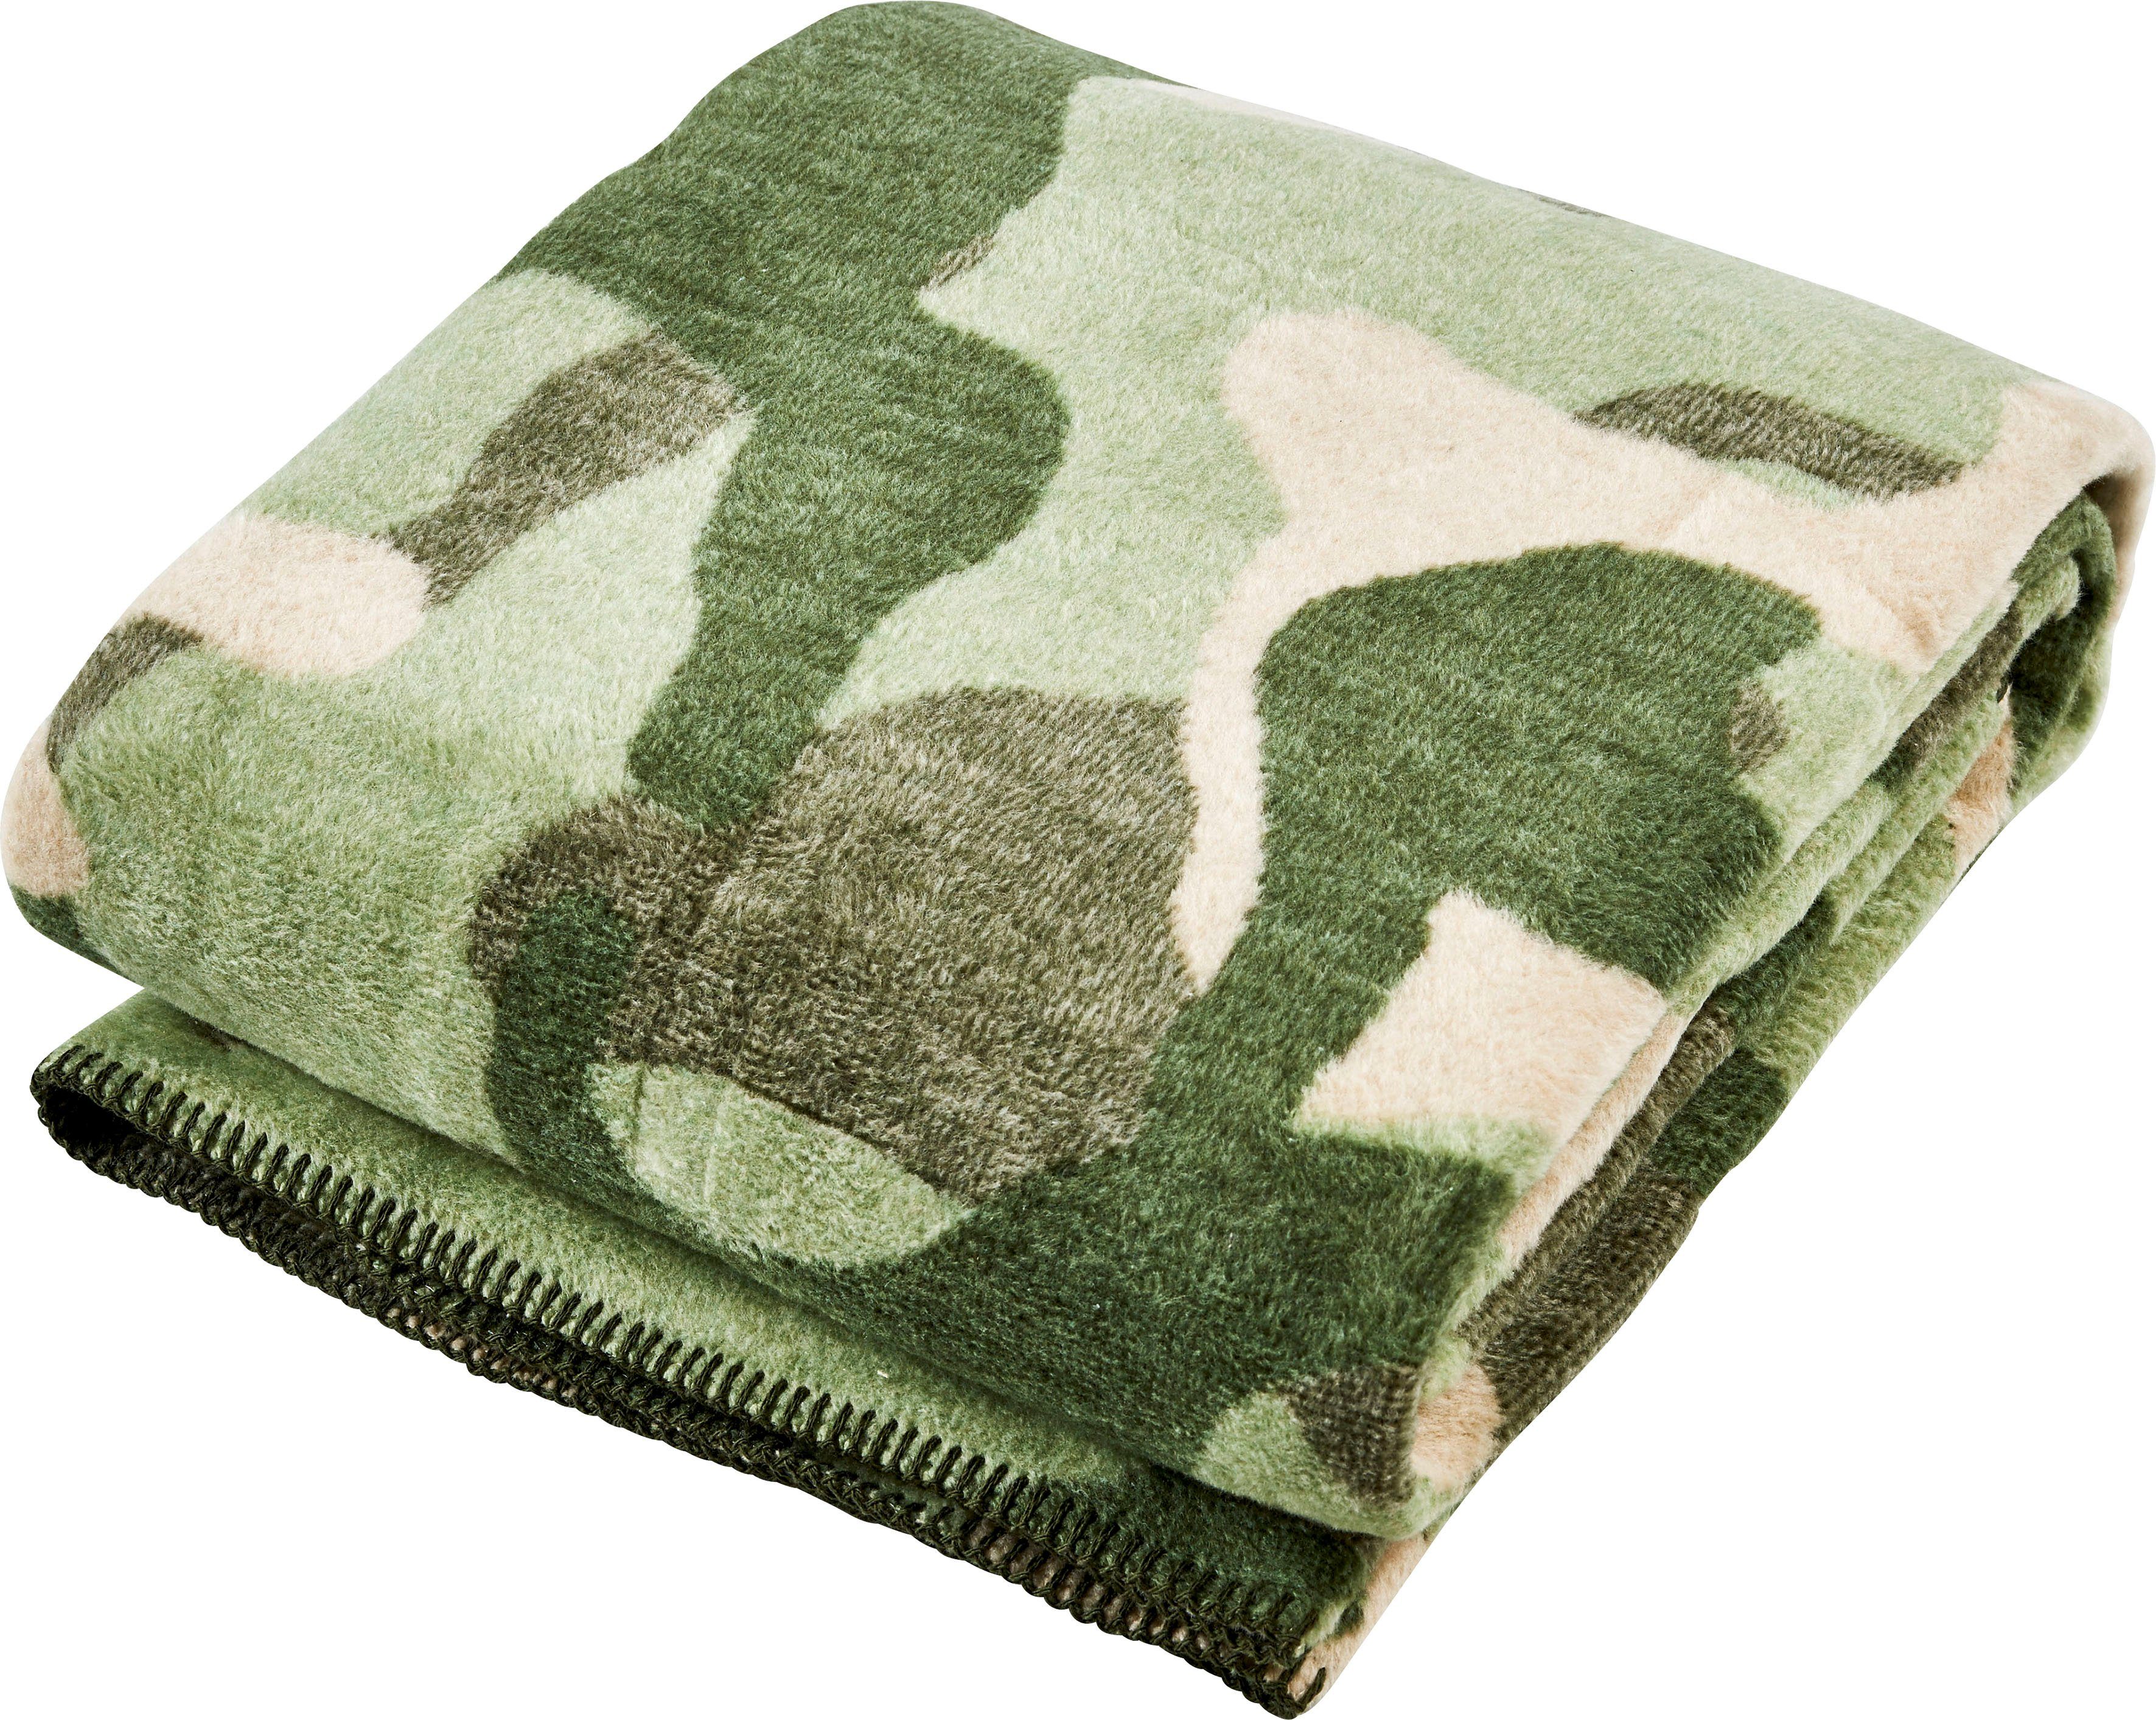 Wohndecke Camouflage, done.®, Wohndecke khaki/grün/beige Kuscheldecke mit einfassender Ziernaht